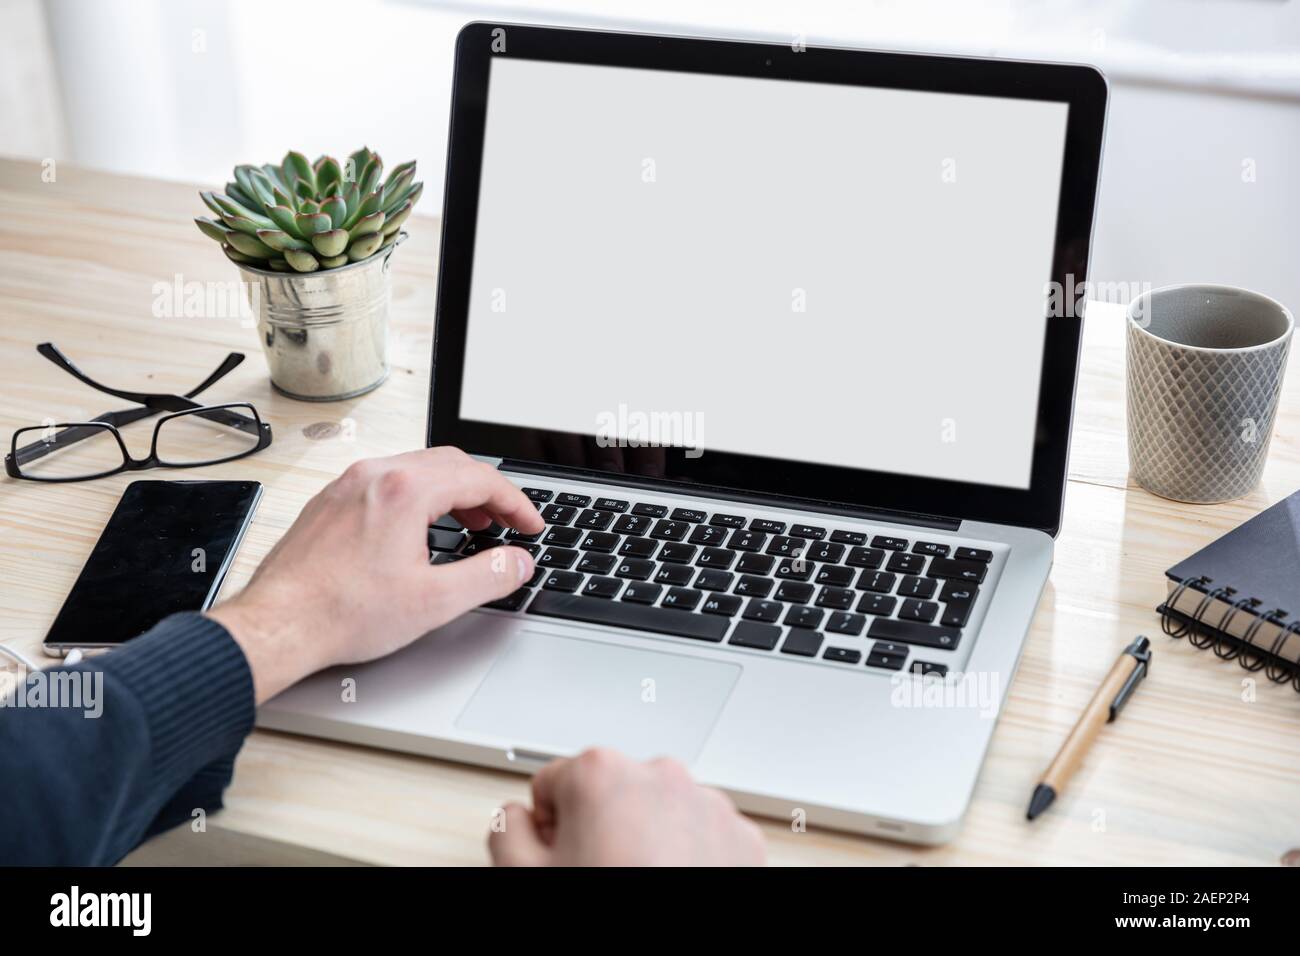 Bildschirm mockup. Mann bei der Arbeit mit einem weißen leeren Bildschirm Laptop auf Holz Schreibtisch, Büro Background, kopieren Raum Stockfoto